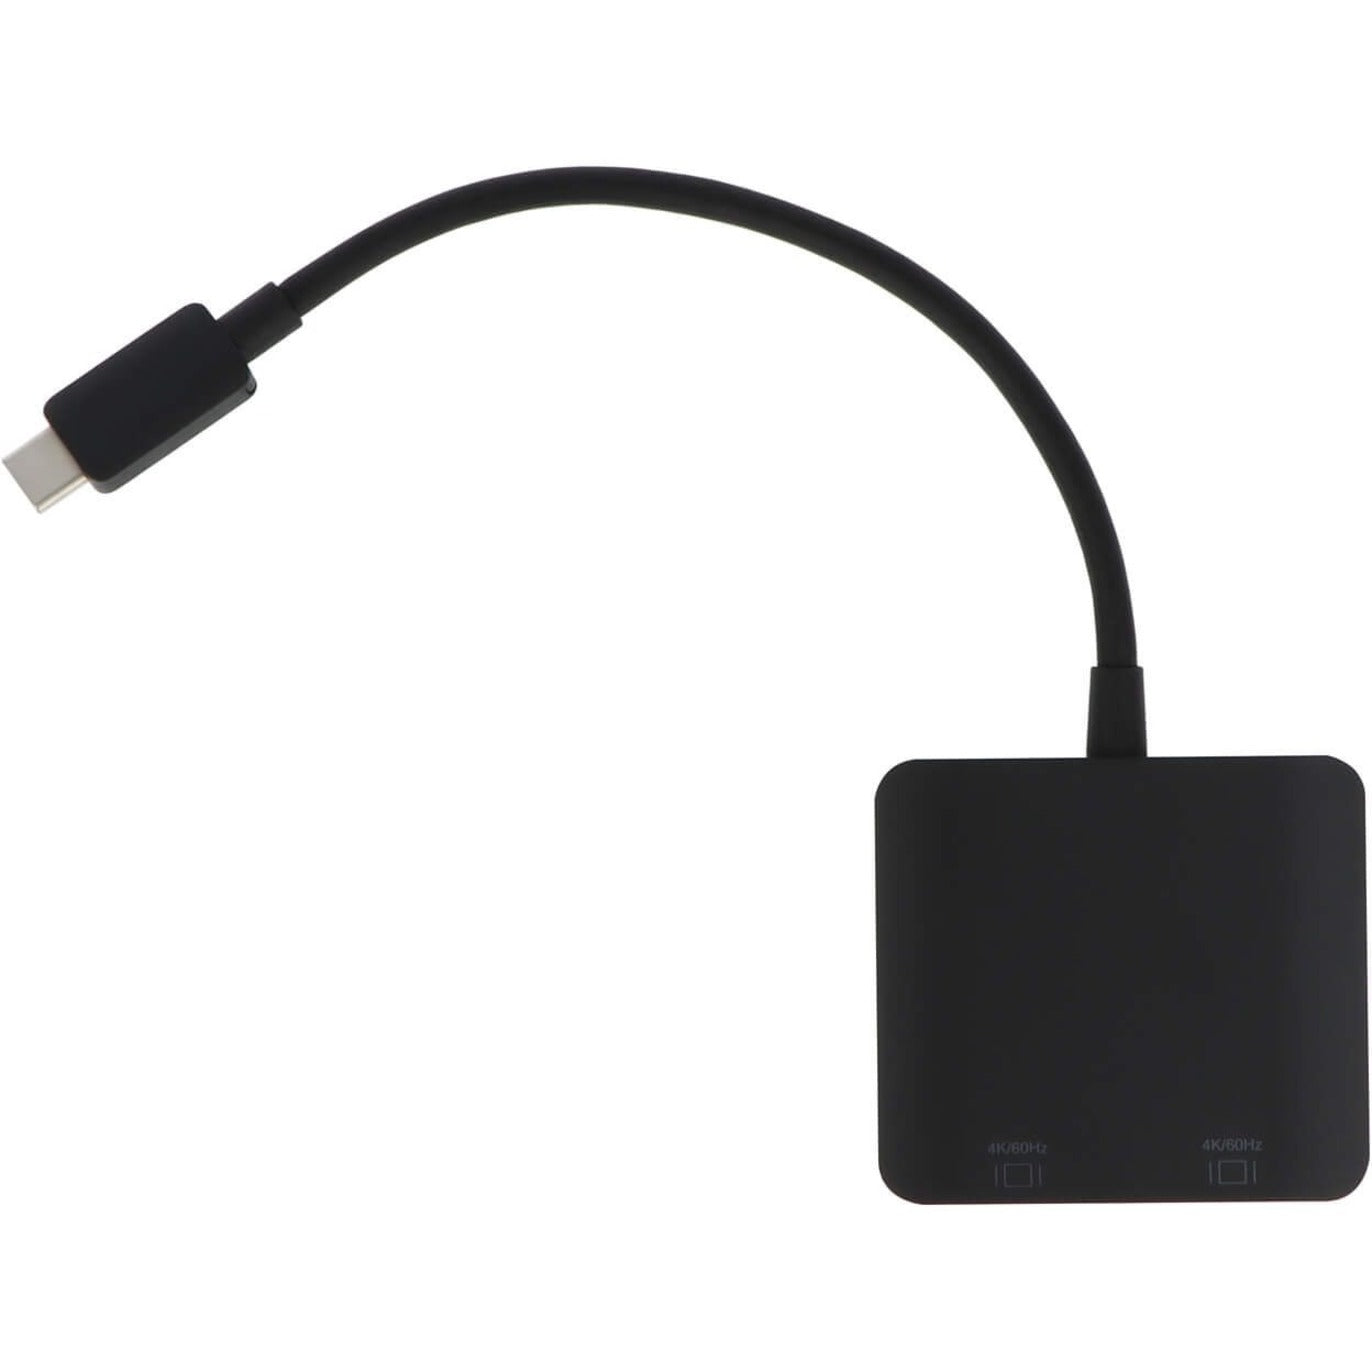 VisionTek 901432 USB-C to HDMI x2 محول، قابل للتوصيل والتشغيل، نشط، دعم دقة 4K VisionTek